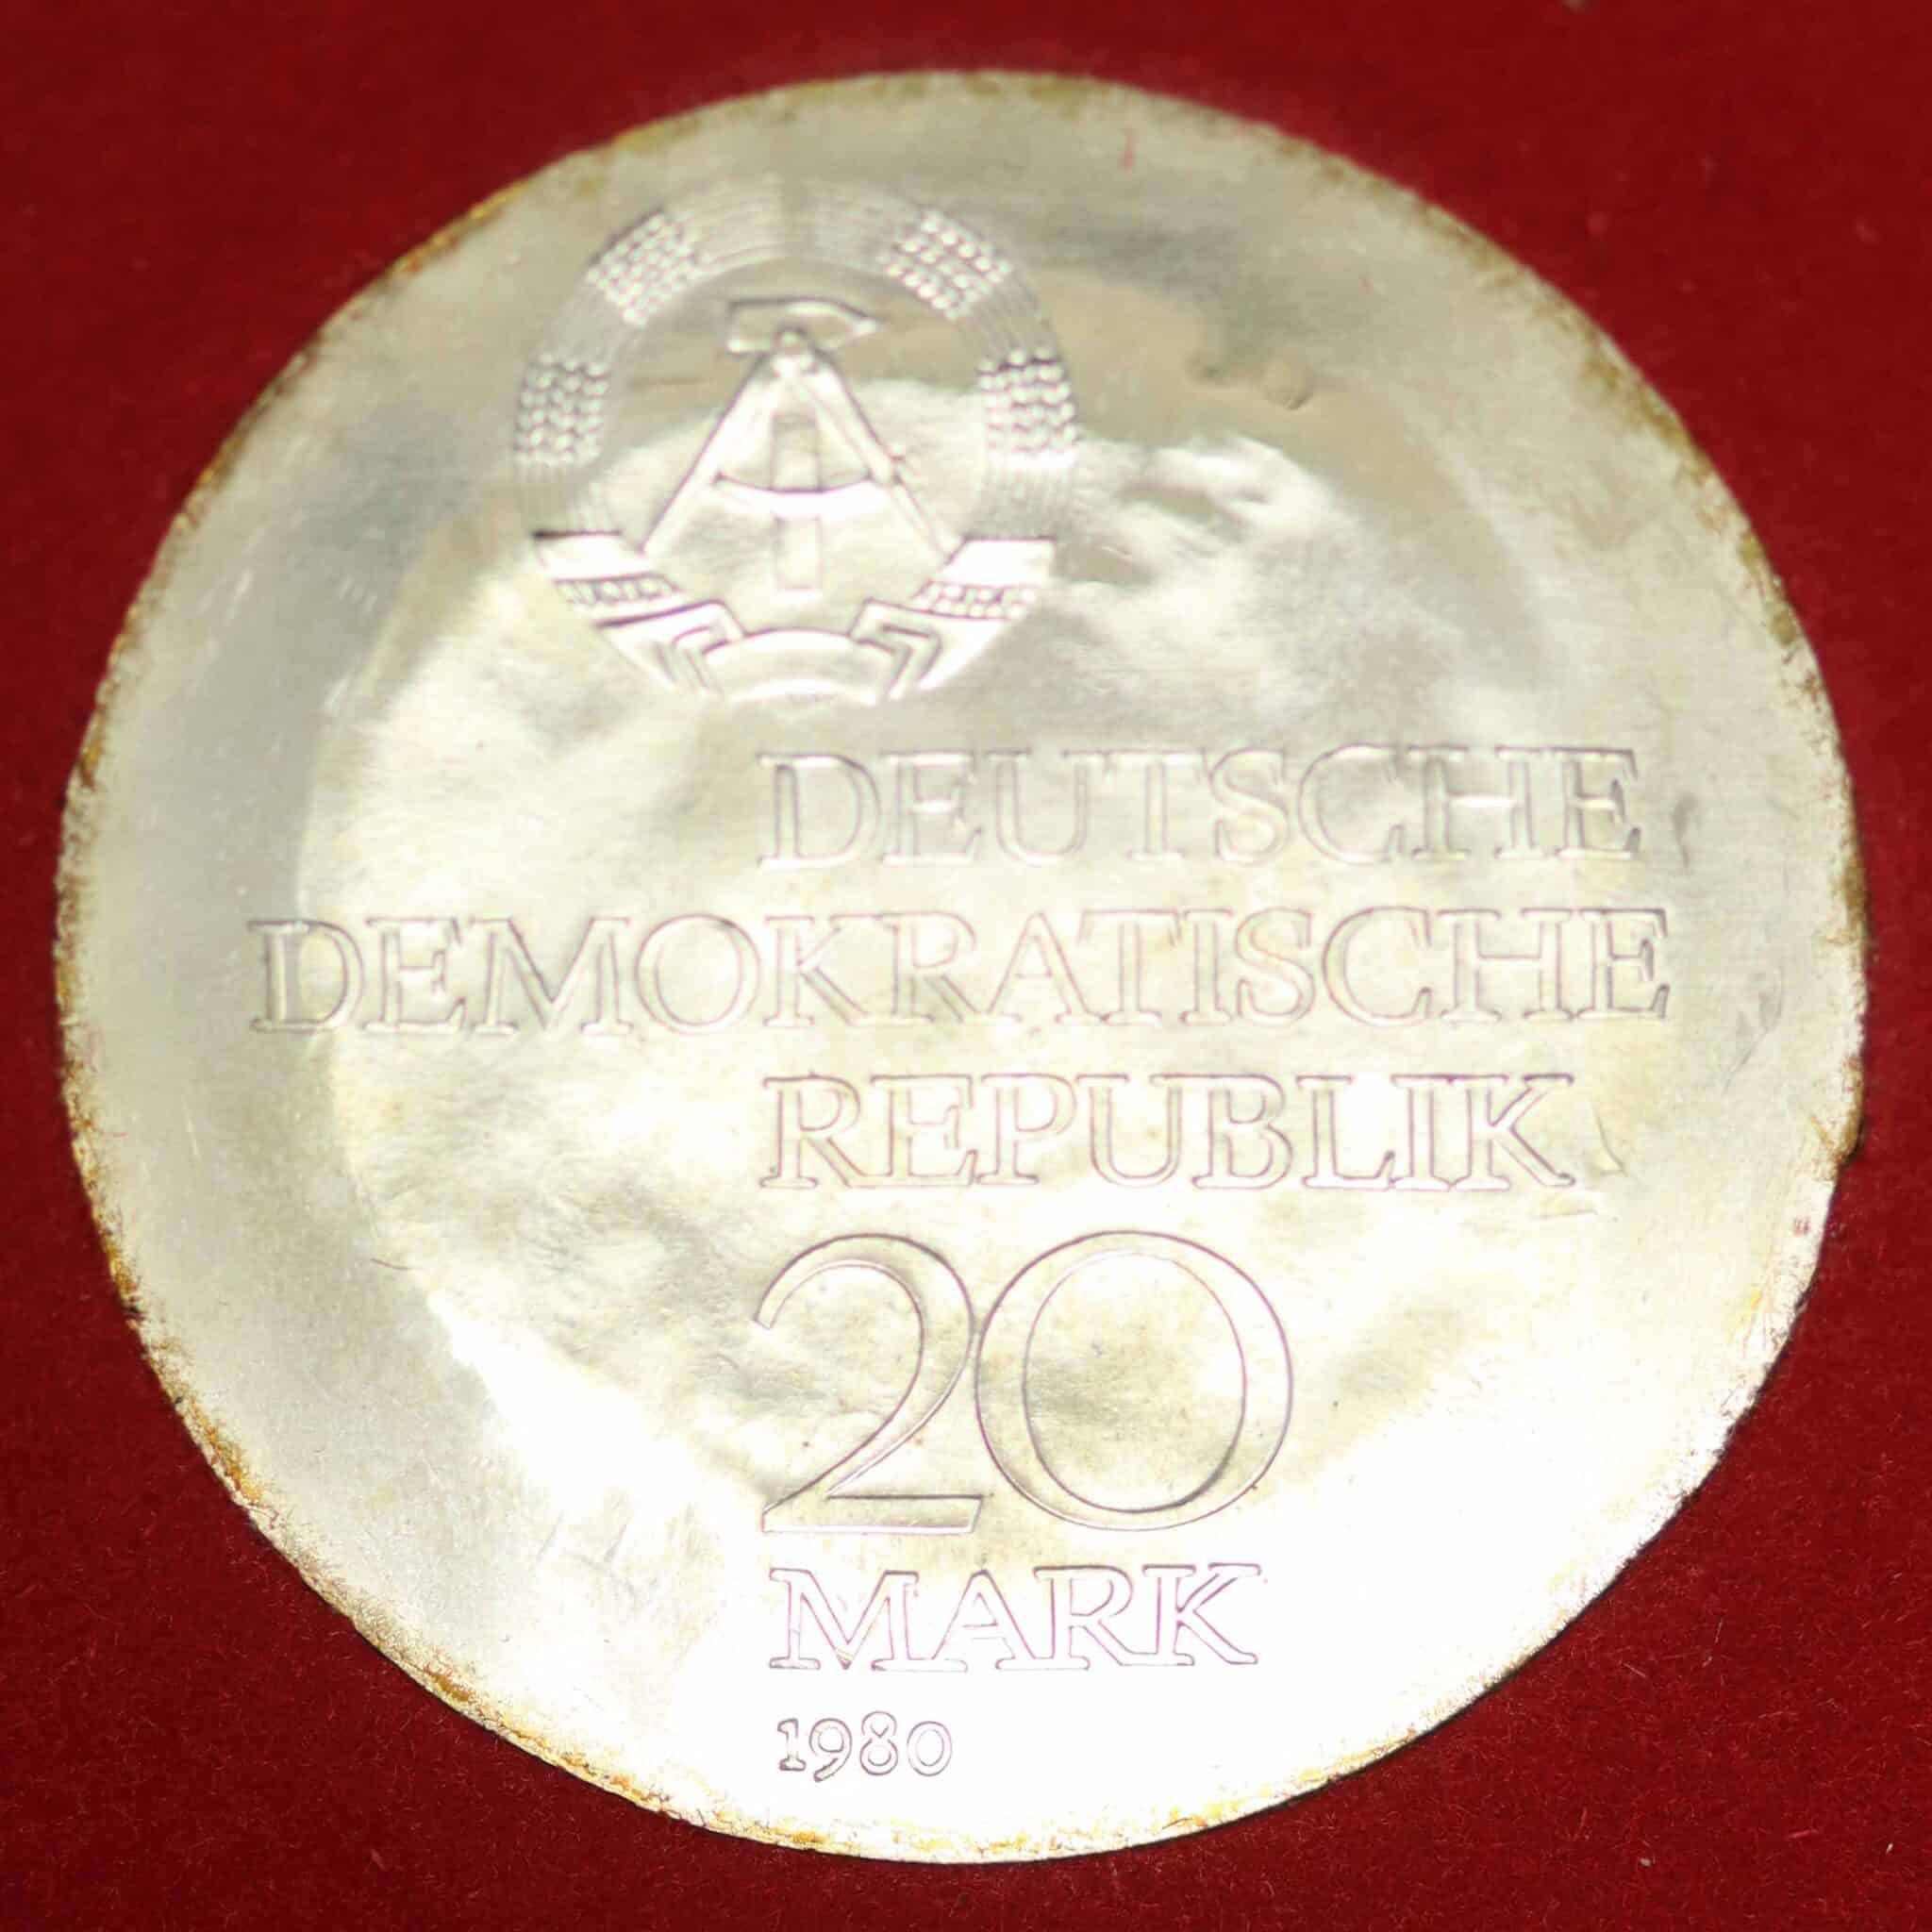 ddr-deutsche-silbermuenzen - DDR 20 Mark 1980 Abbe mit Gegenstempel zur Olympiade in Moskau